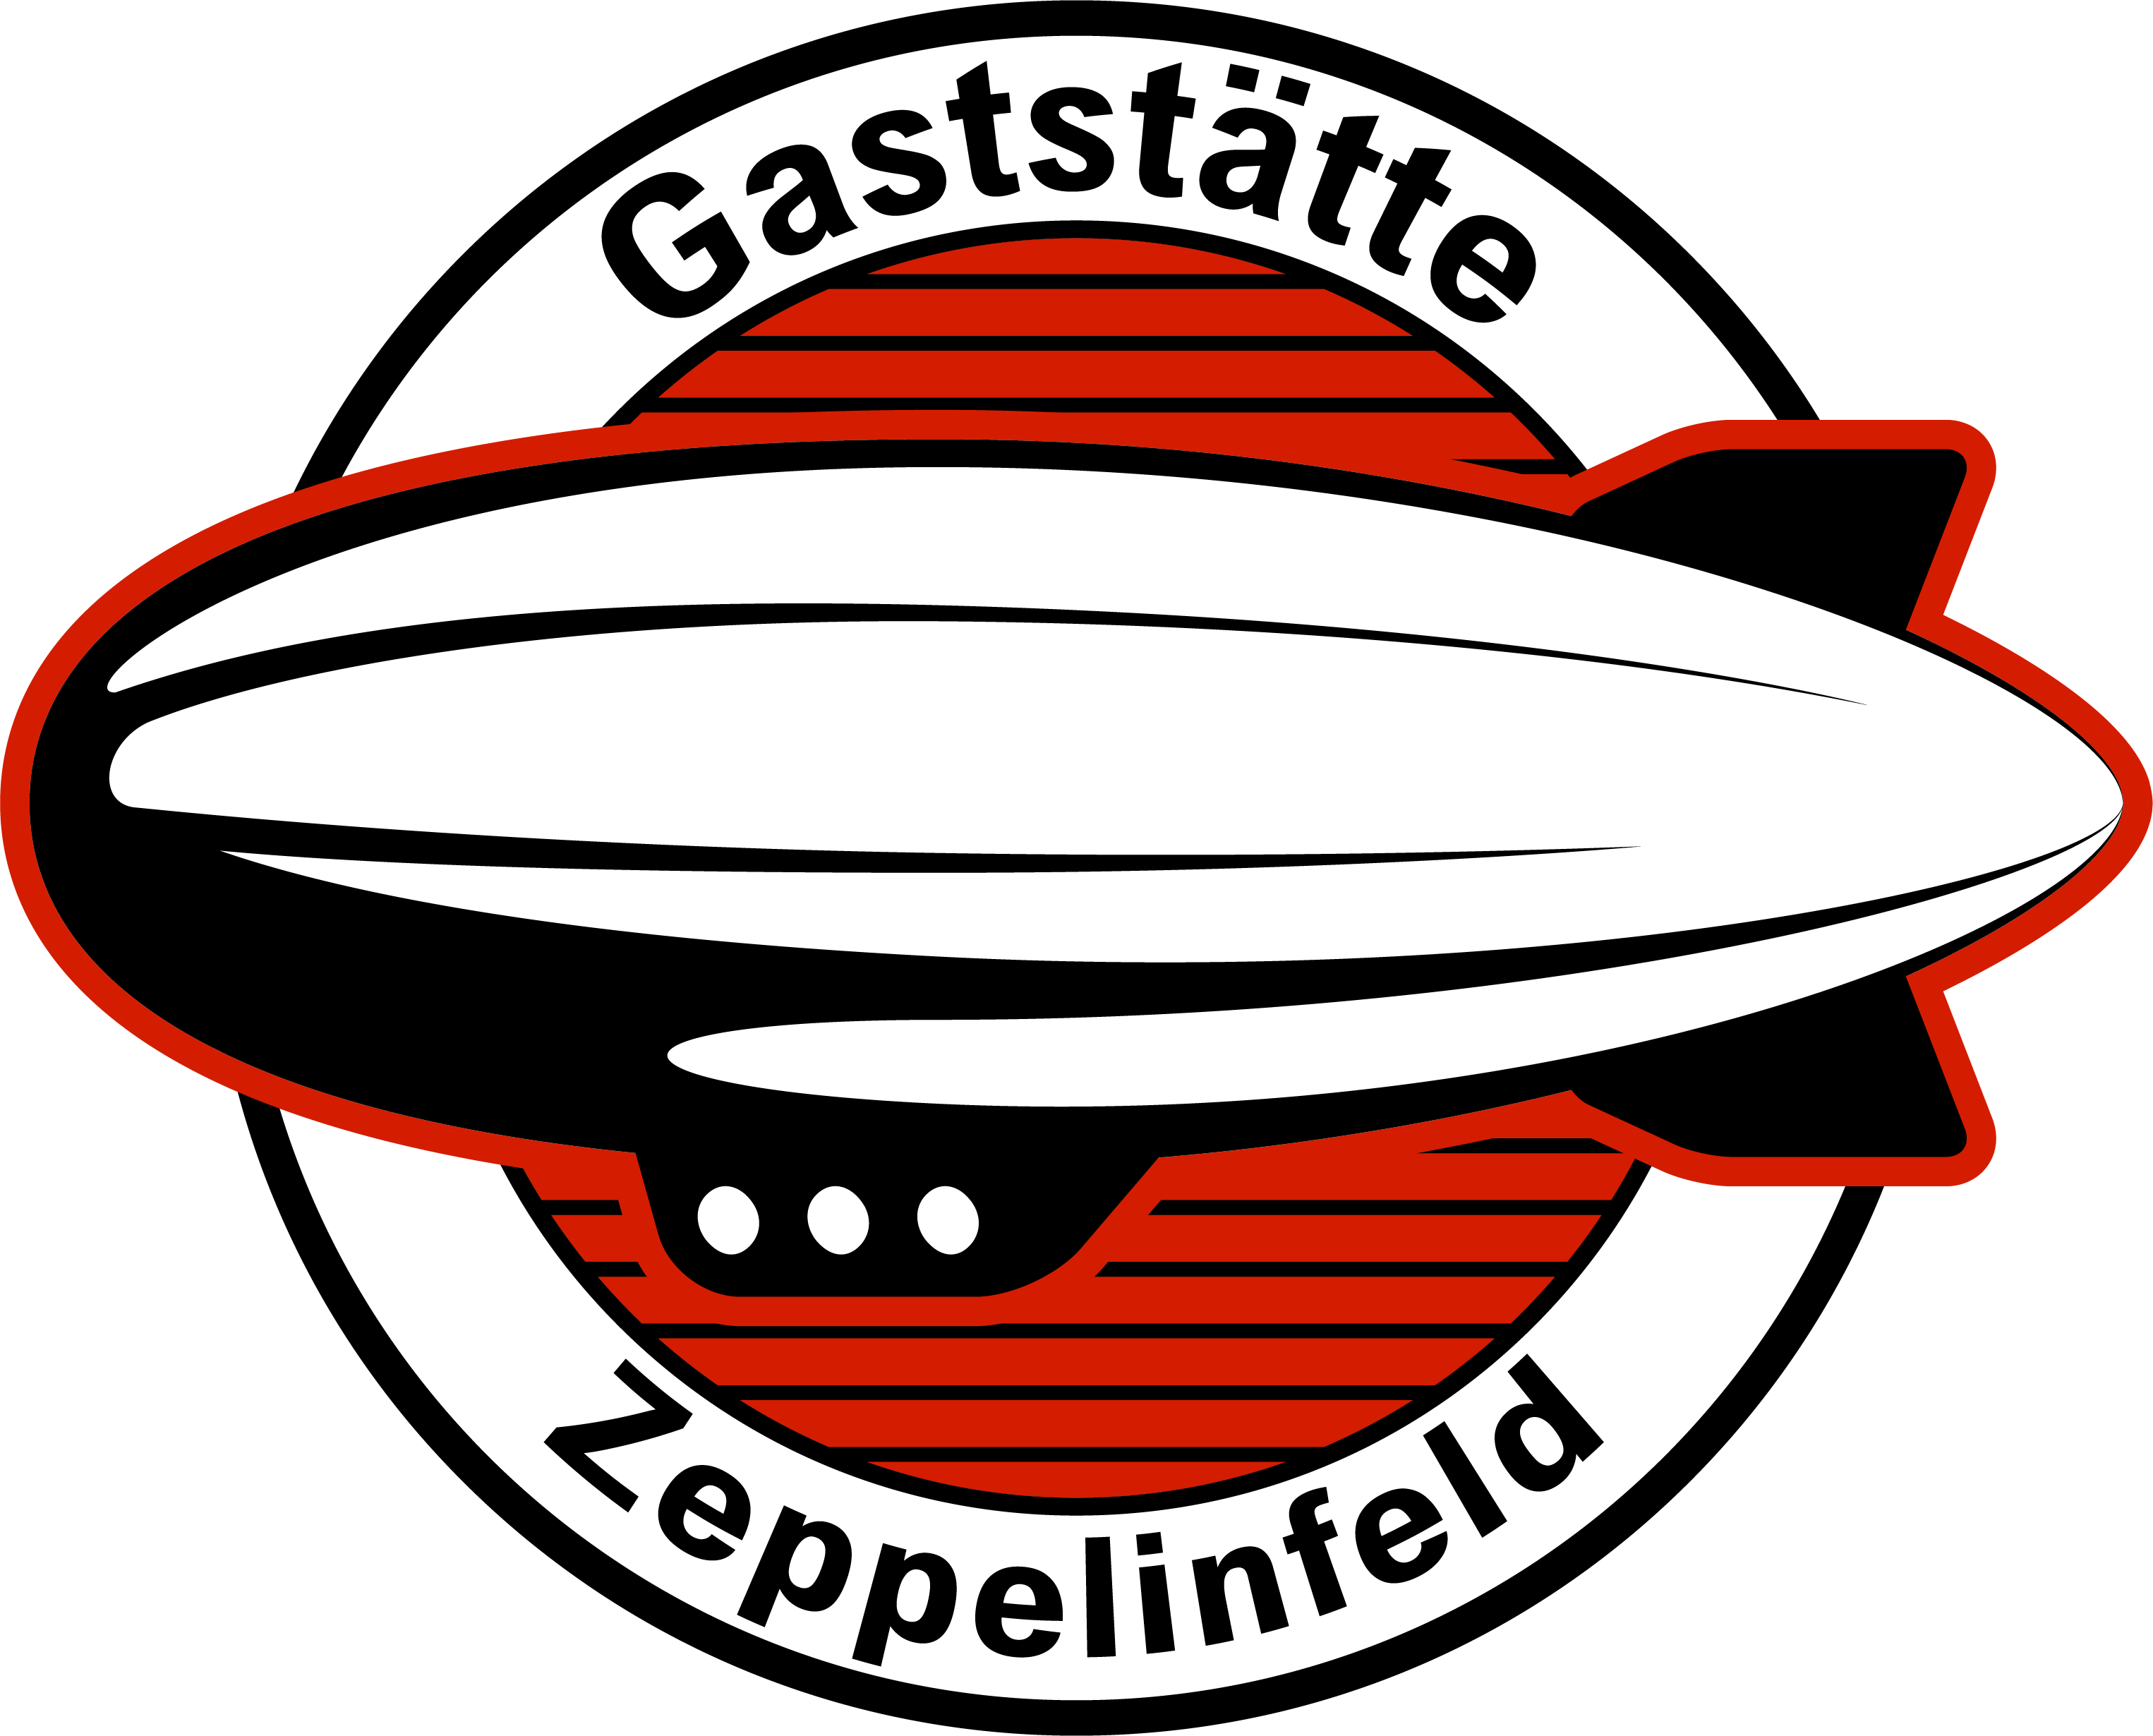 Gaststätte Zeppelinfeld